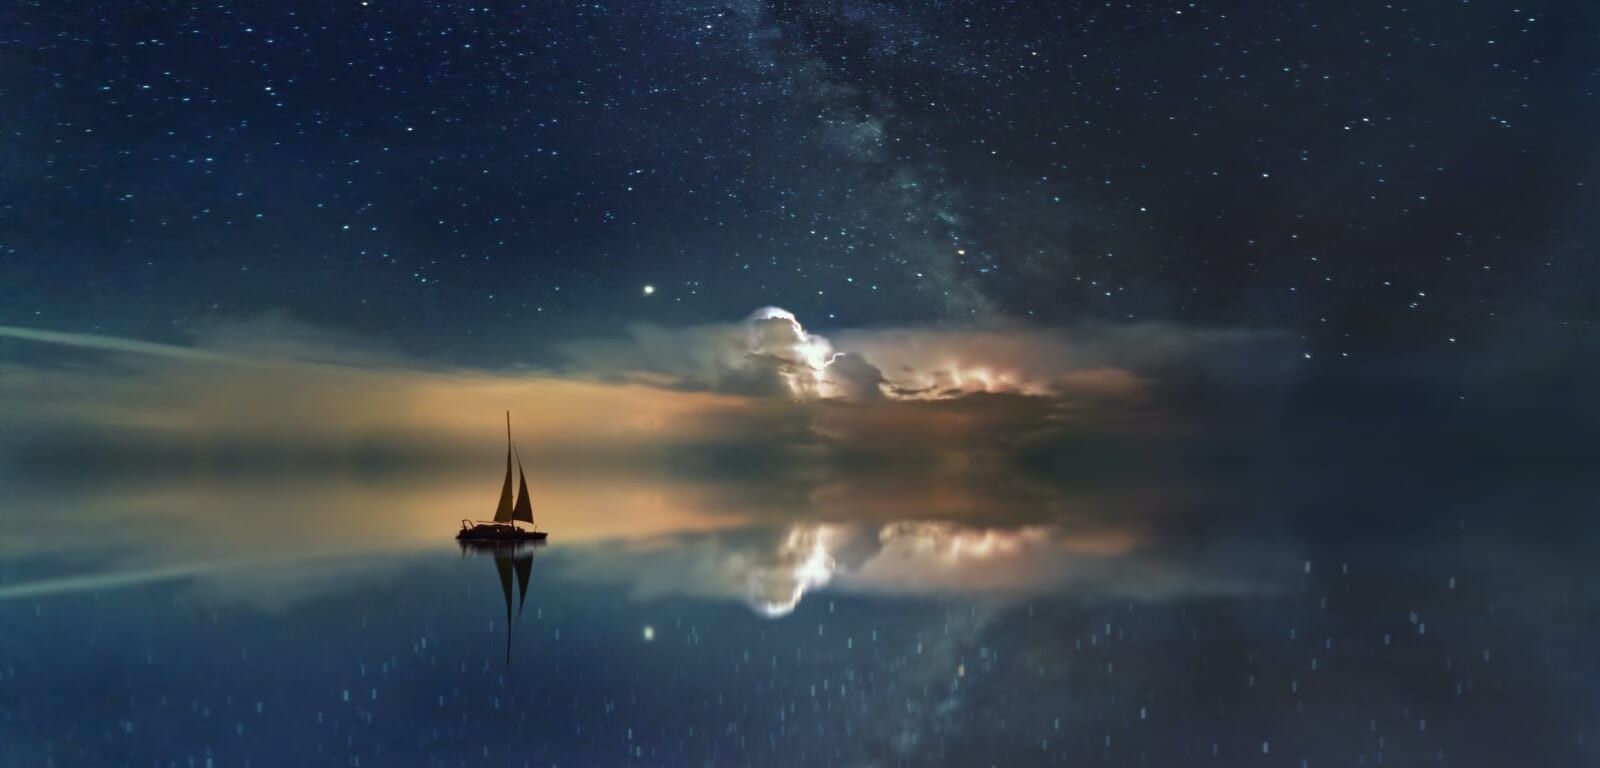 sailing in dream scape